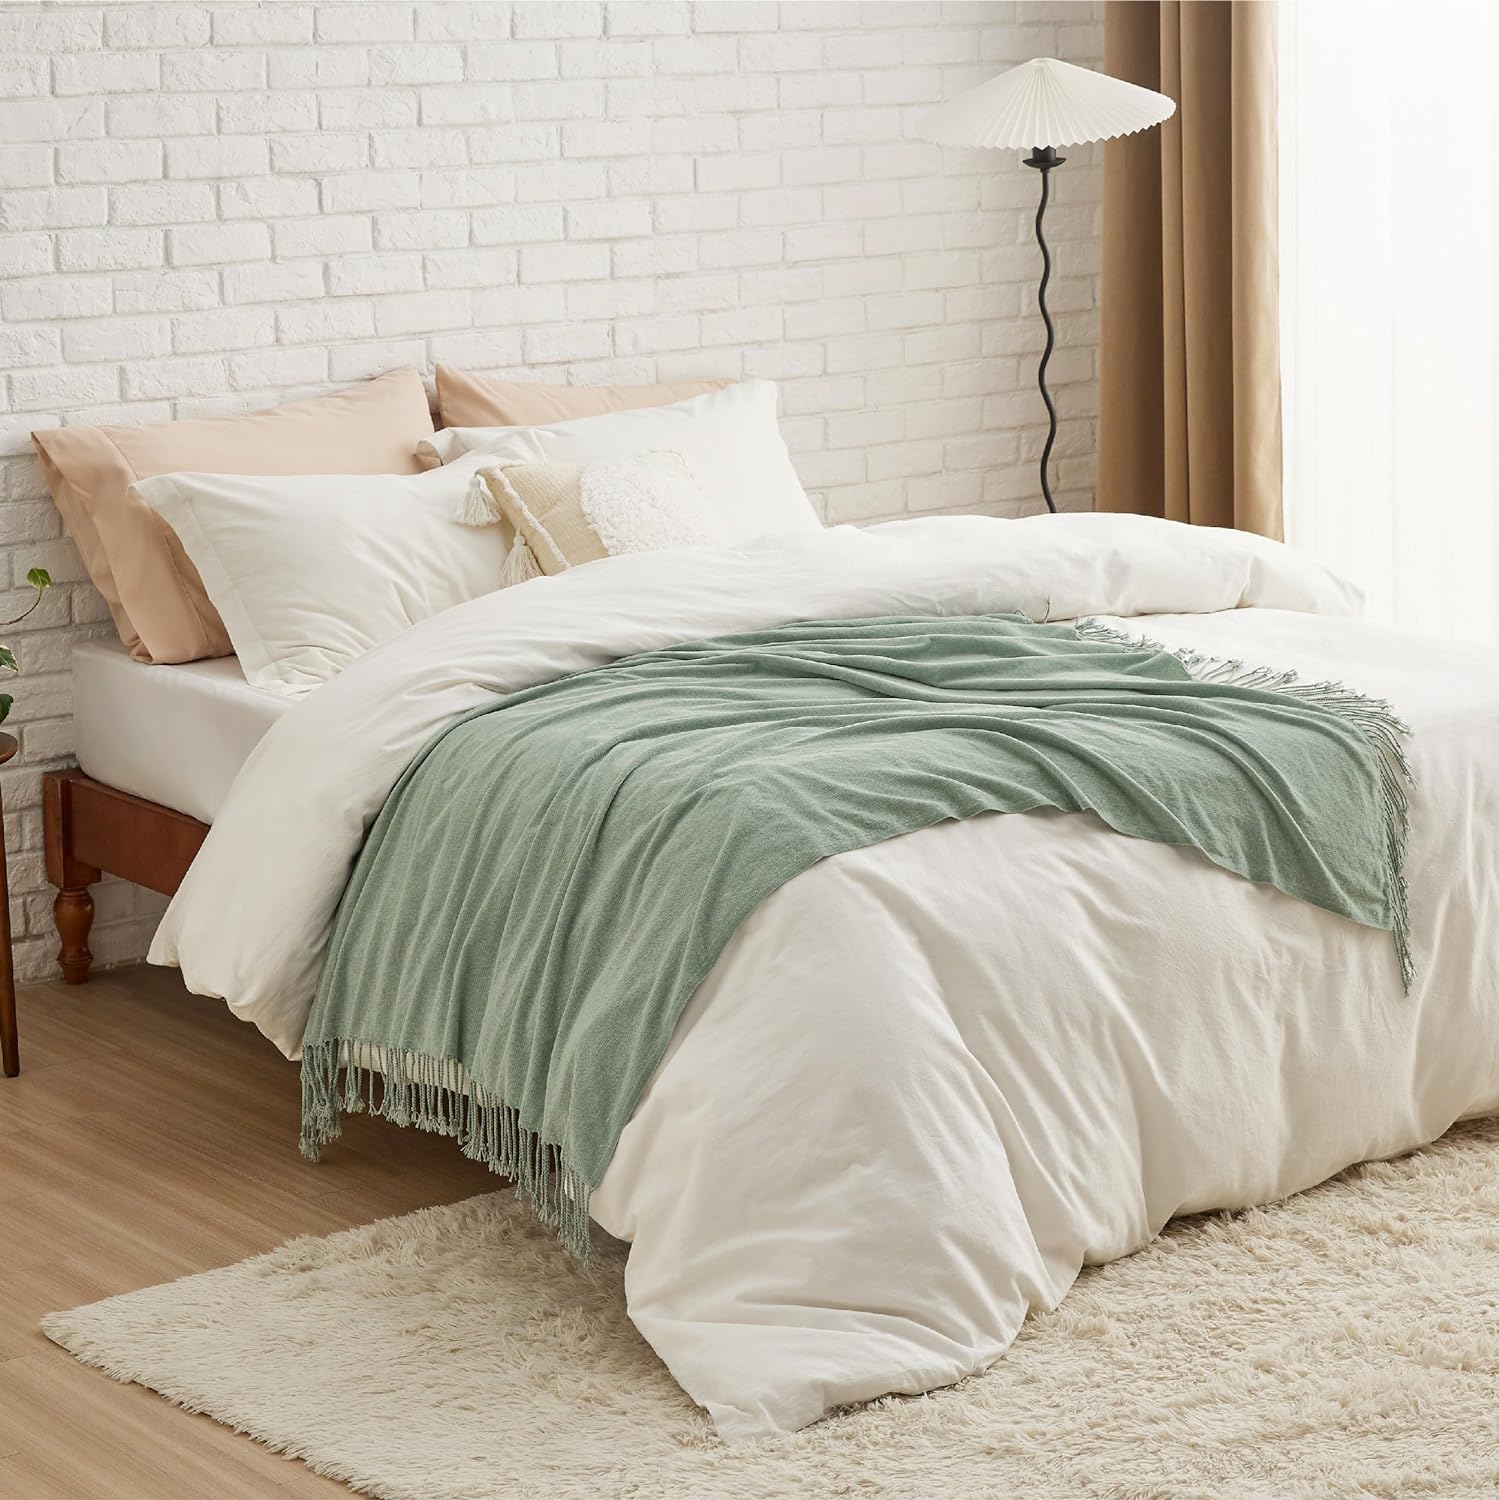  AIVIA - Mantas para sofá o cama, colorida felpilla tejida,  suave, reversible, de lujo, para sala, dormitorio o sofá, con flecos  bohemios : Hogar y Cocina